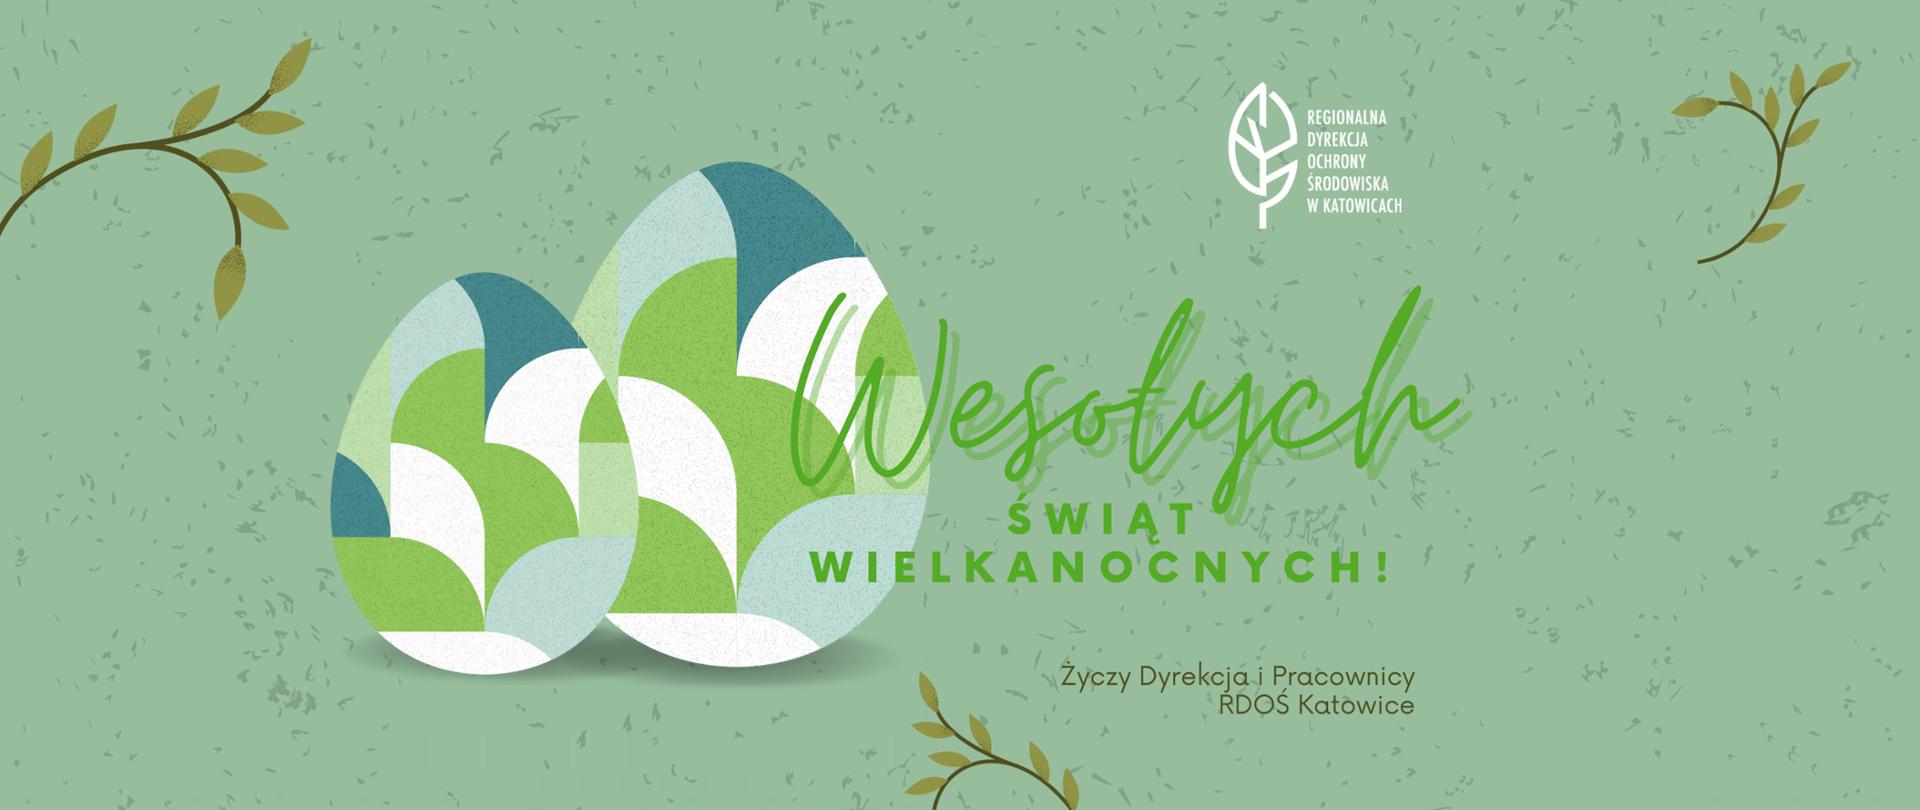 Wirtualna kartka z życzeniami wielkanocnymi od Regionalnej Dyrekcji Ochrony Środowiska w Katowicach